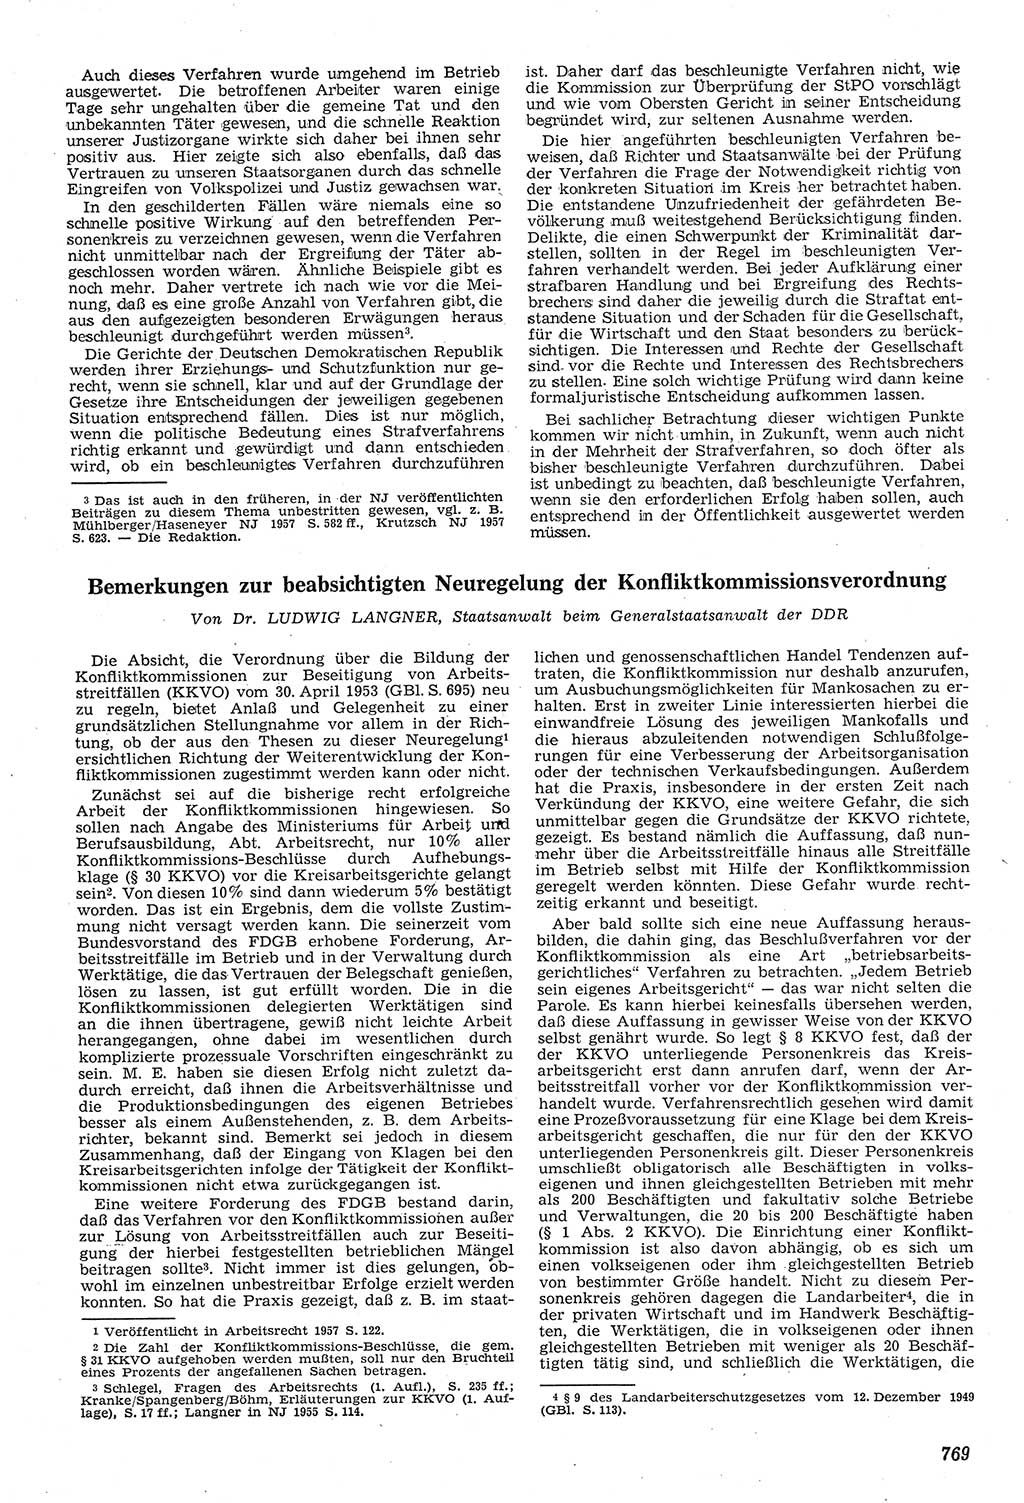 Neue Justiz (NJ), Zeitschrift für Recht und Rechtswissenschaft [Deutsche Demokratische Republik (DDR)], 11. Jahrgang 1957, Seite 769 (NJ DDR 1957, S. 769)